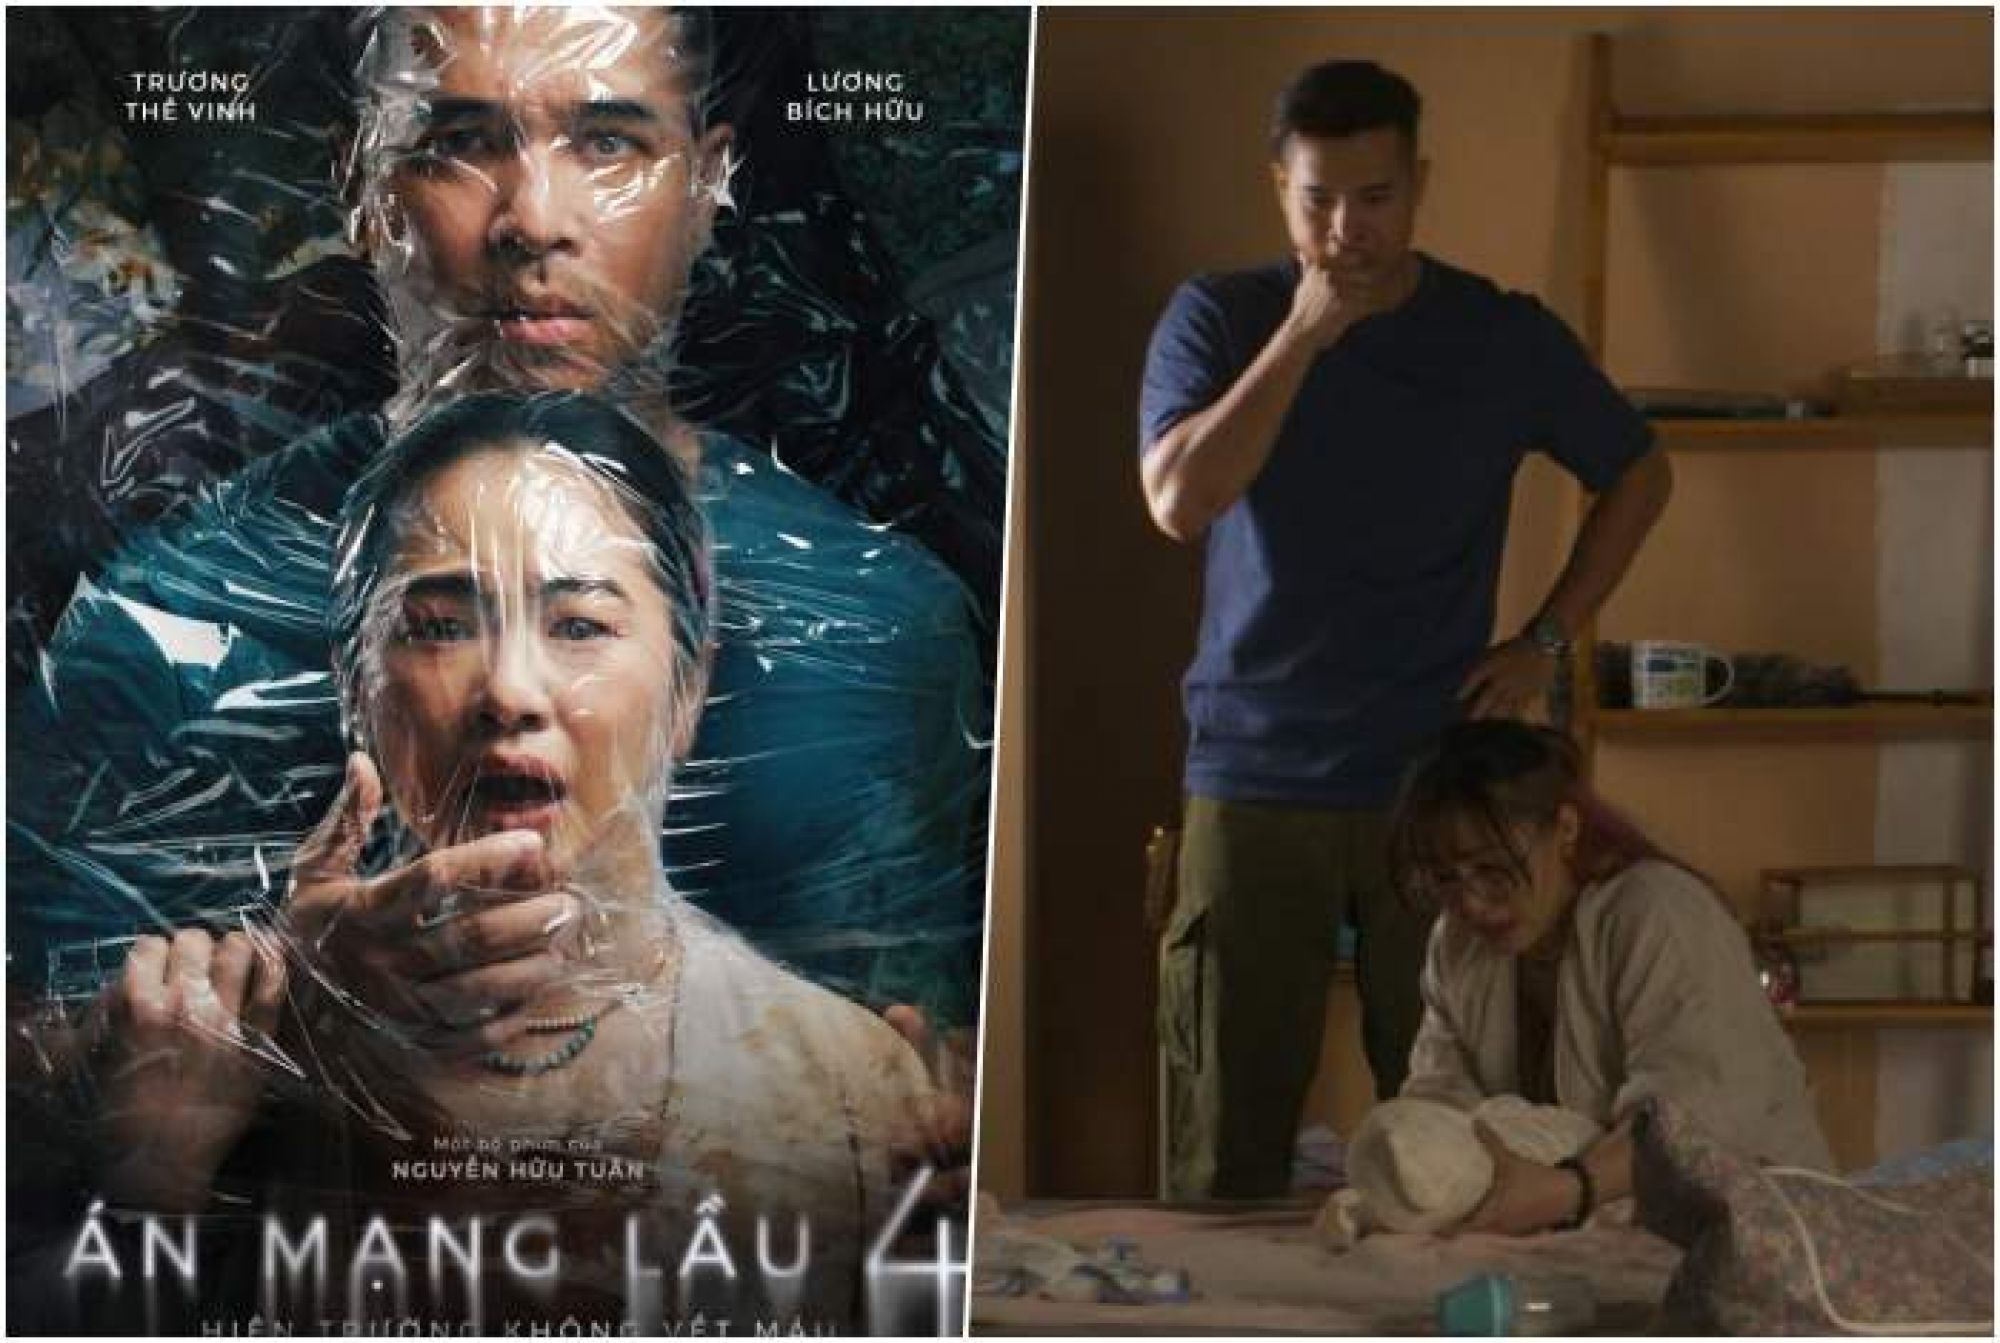 Lương Bích Hữu “ngộp thở” bởi Trương Thế Vinh trên teaser poster phim “Án mạng lầu 4”